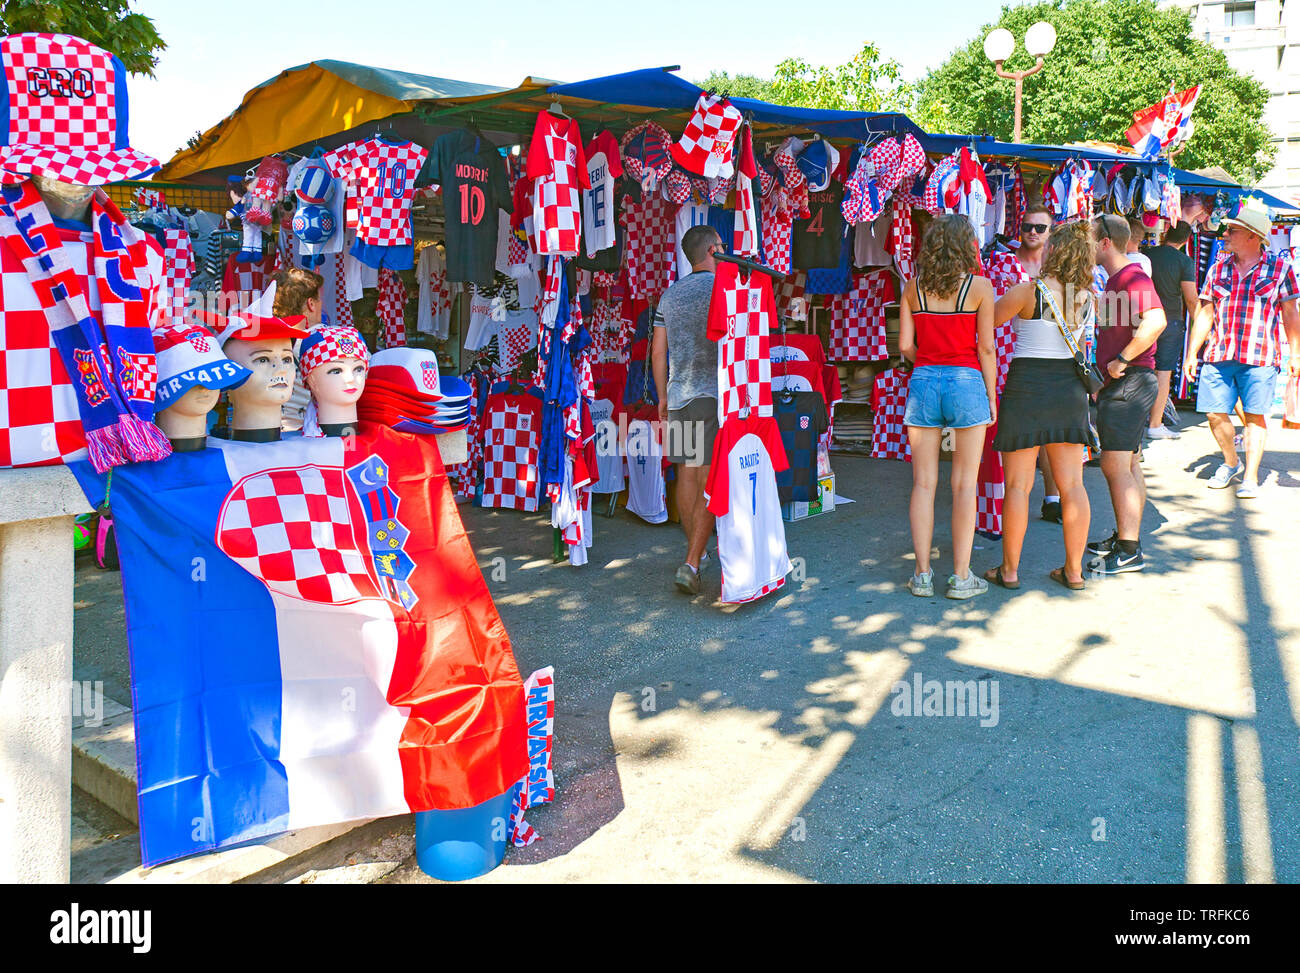 Menschen Tarifverhandlungen mit Anbieter am Souvenirstand, Kai, Split, Kroatien. Rote und weiße themed Kleidung unterstützt Kroatiens Wm gewinnen Spielgeschehen Stockfoto